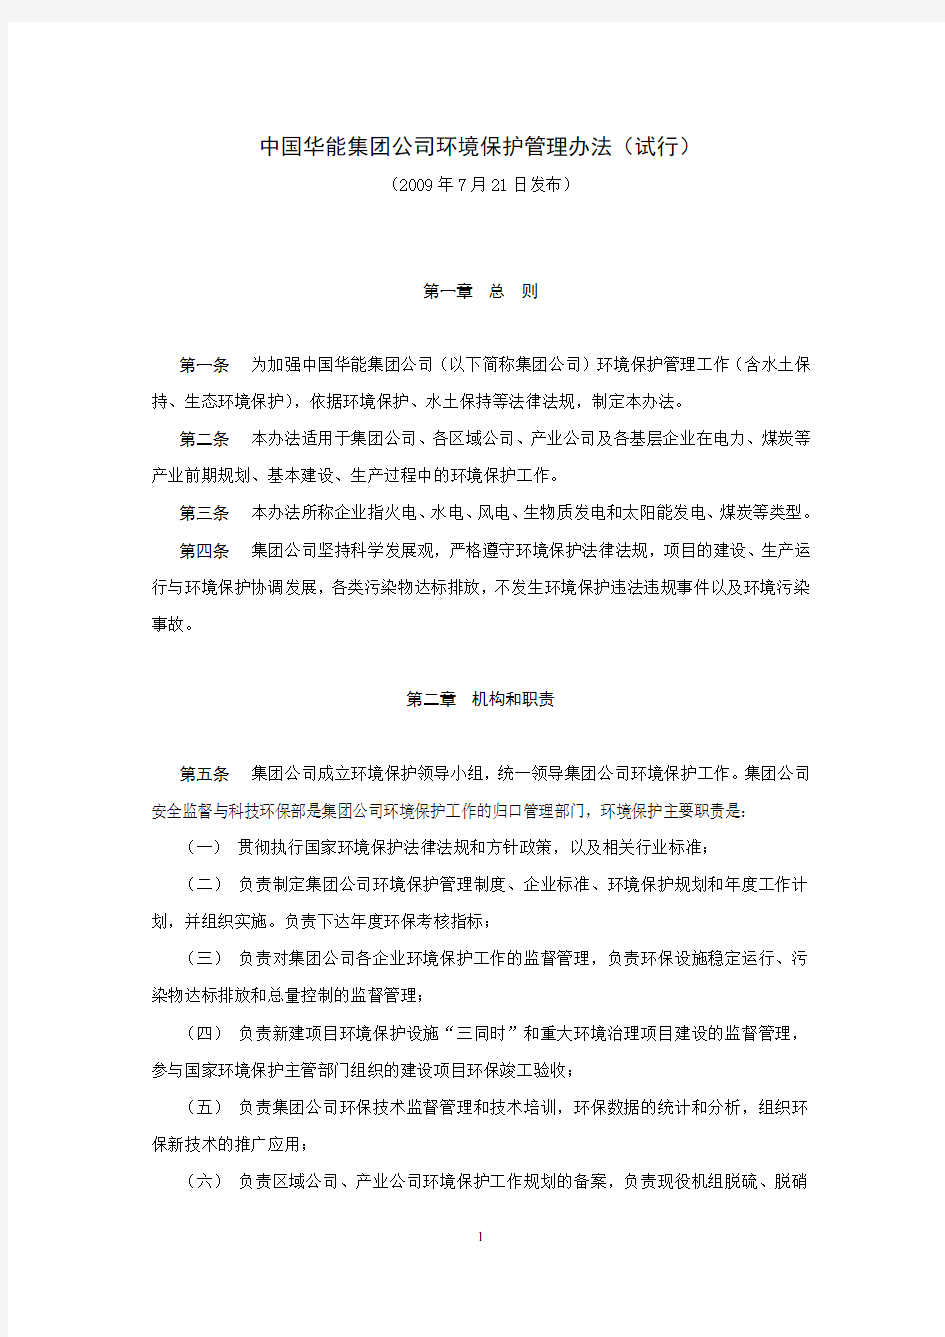 中国华能集团公司环境保护管理办法